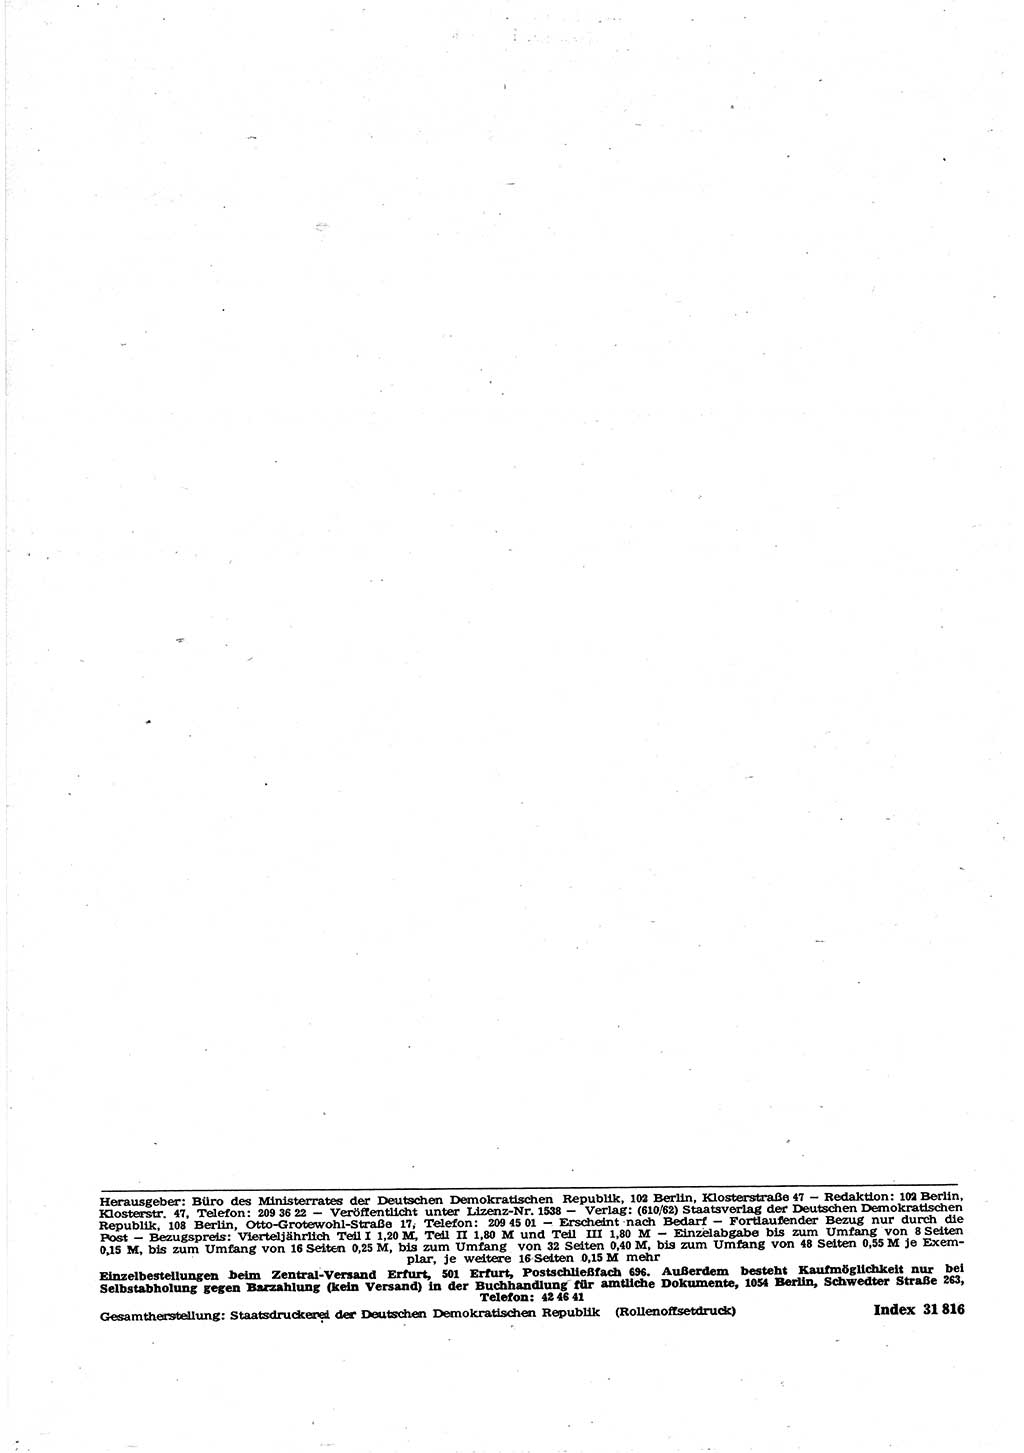 Gesetzblatt (GBl.) der Deutschen Demokratischen Republik (DDR) Teil Ⅰ 1969, Seite 270 (GBl. DDR Ⅰ 1969, S. 270)